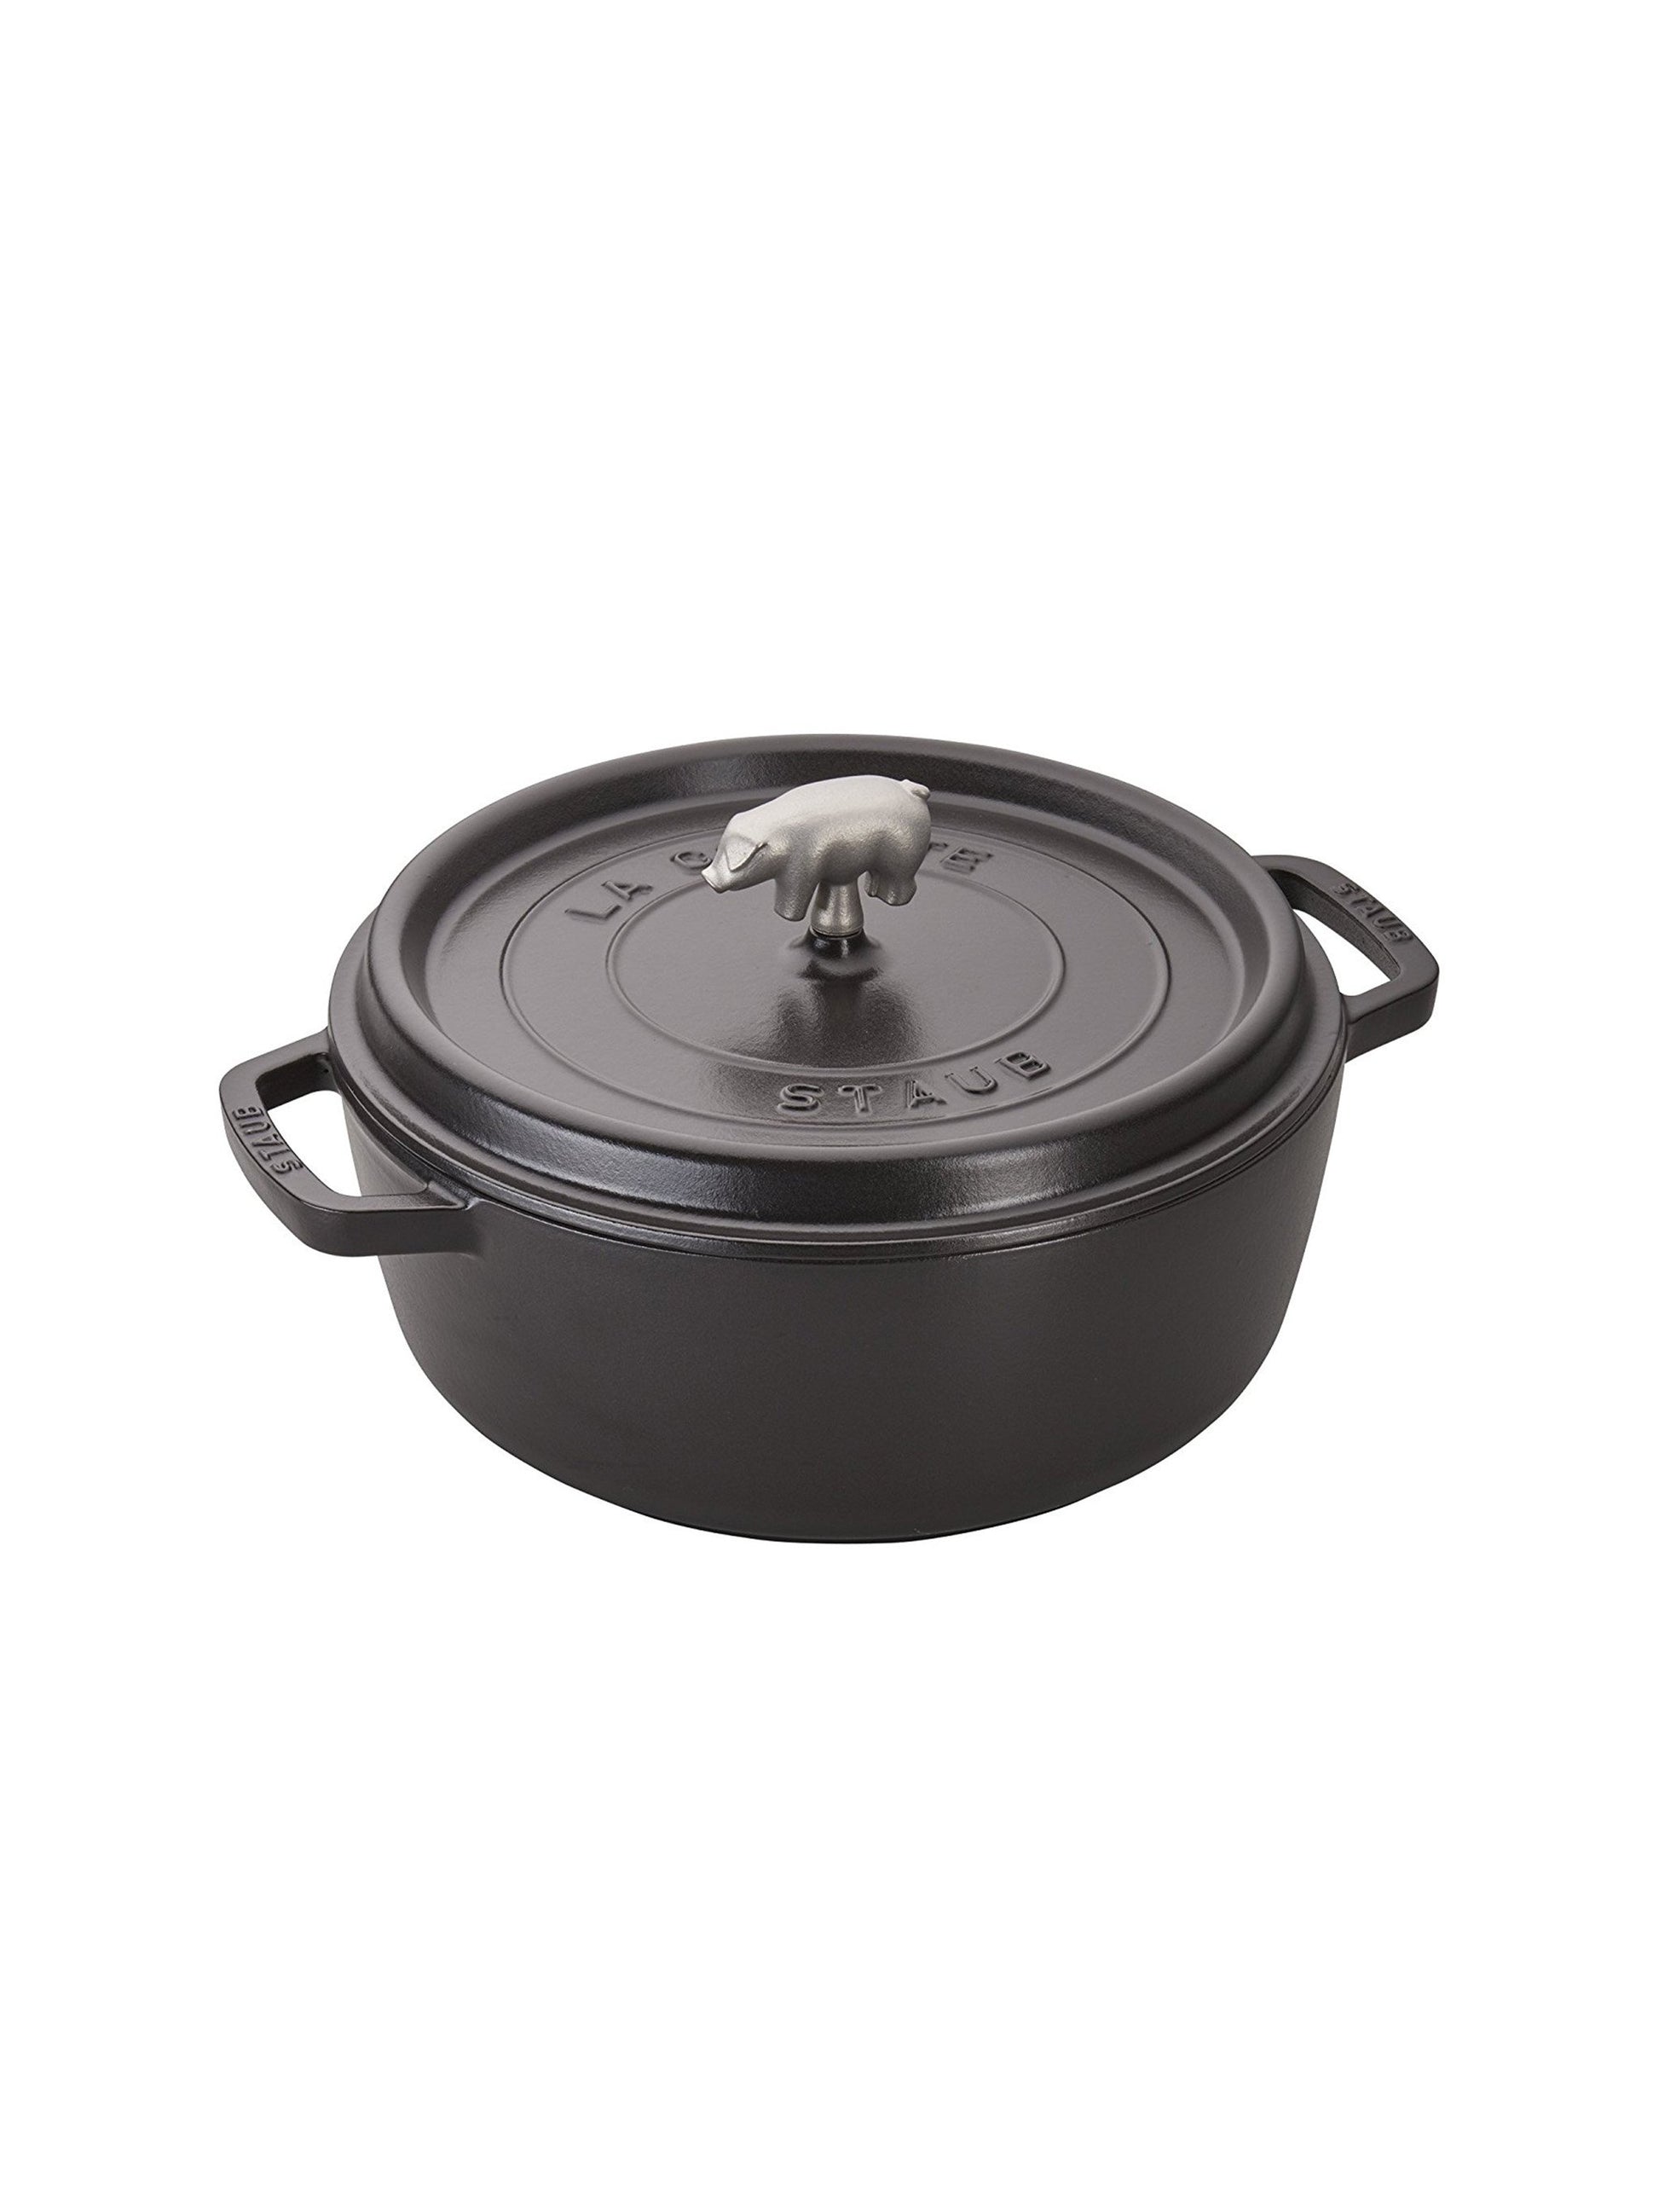 Staub Black 1.6 Quart Cast Iron Rice Cocotte Pot